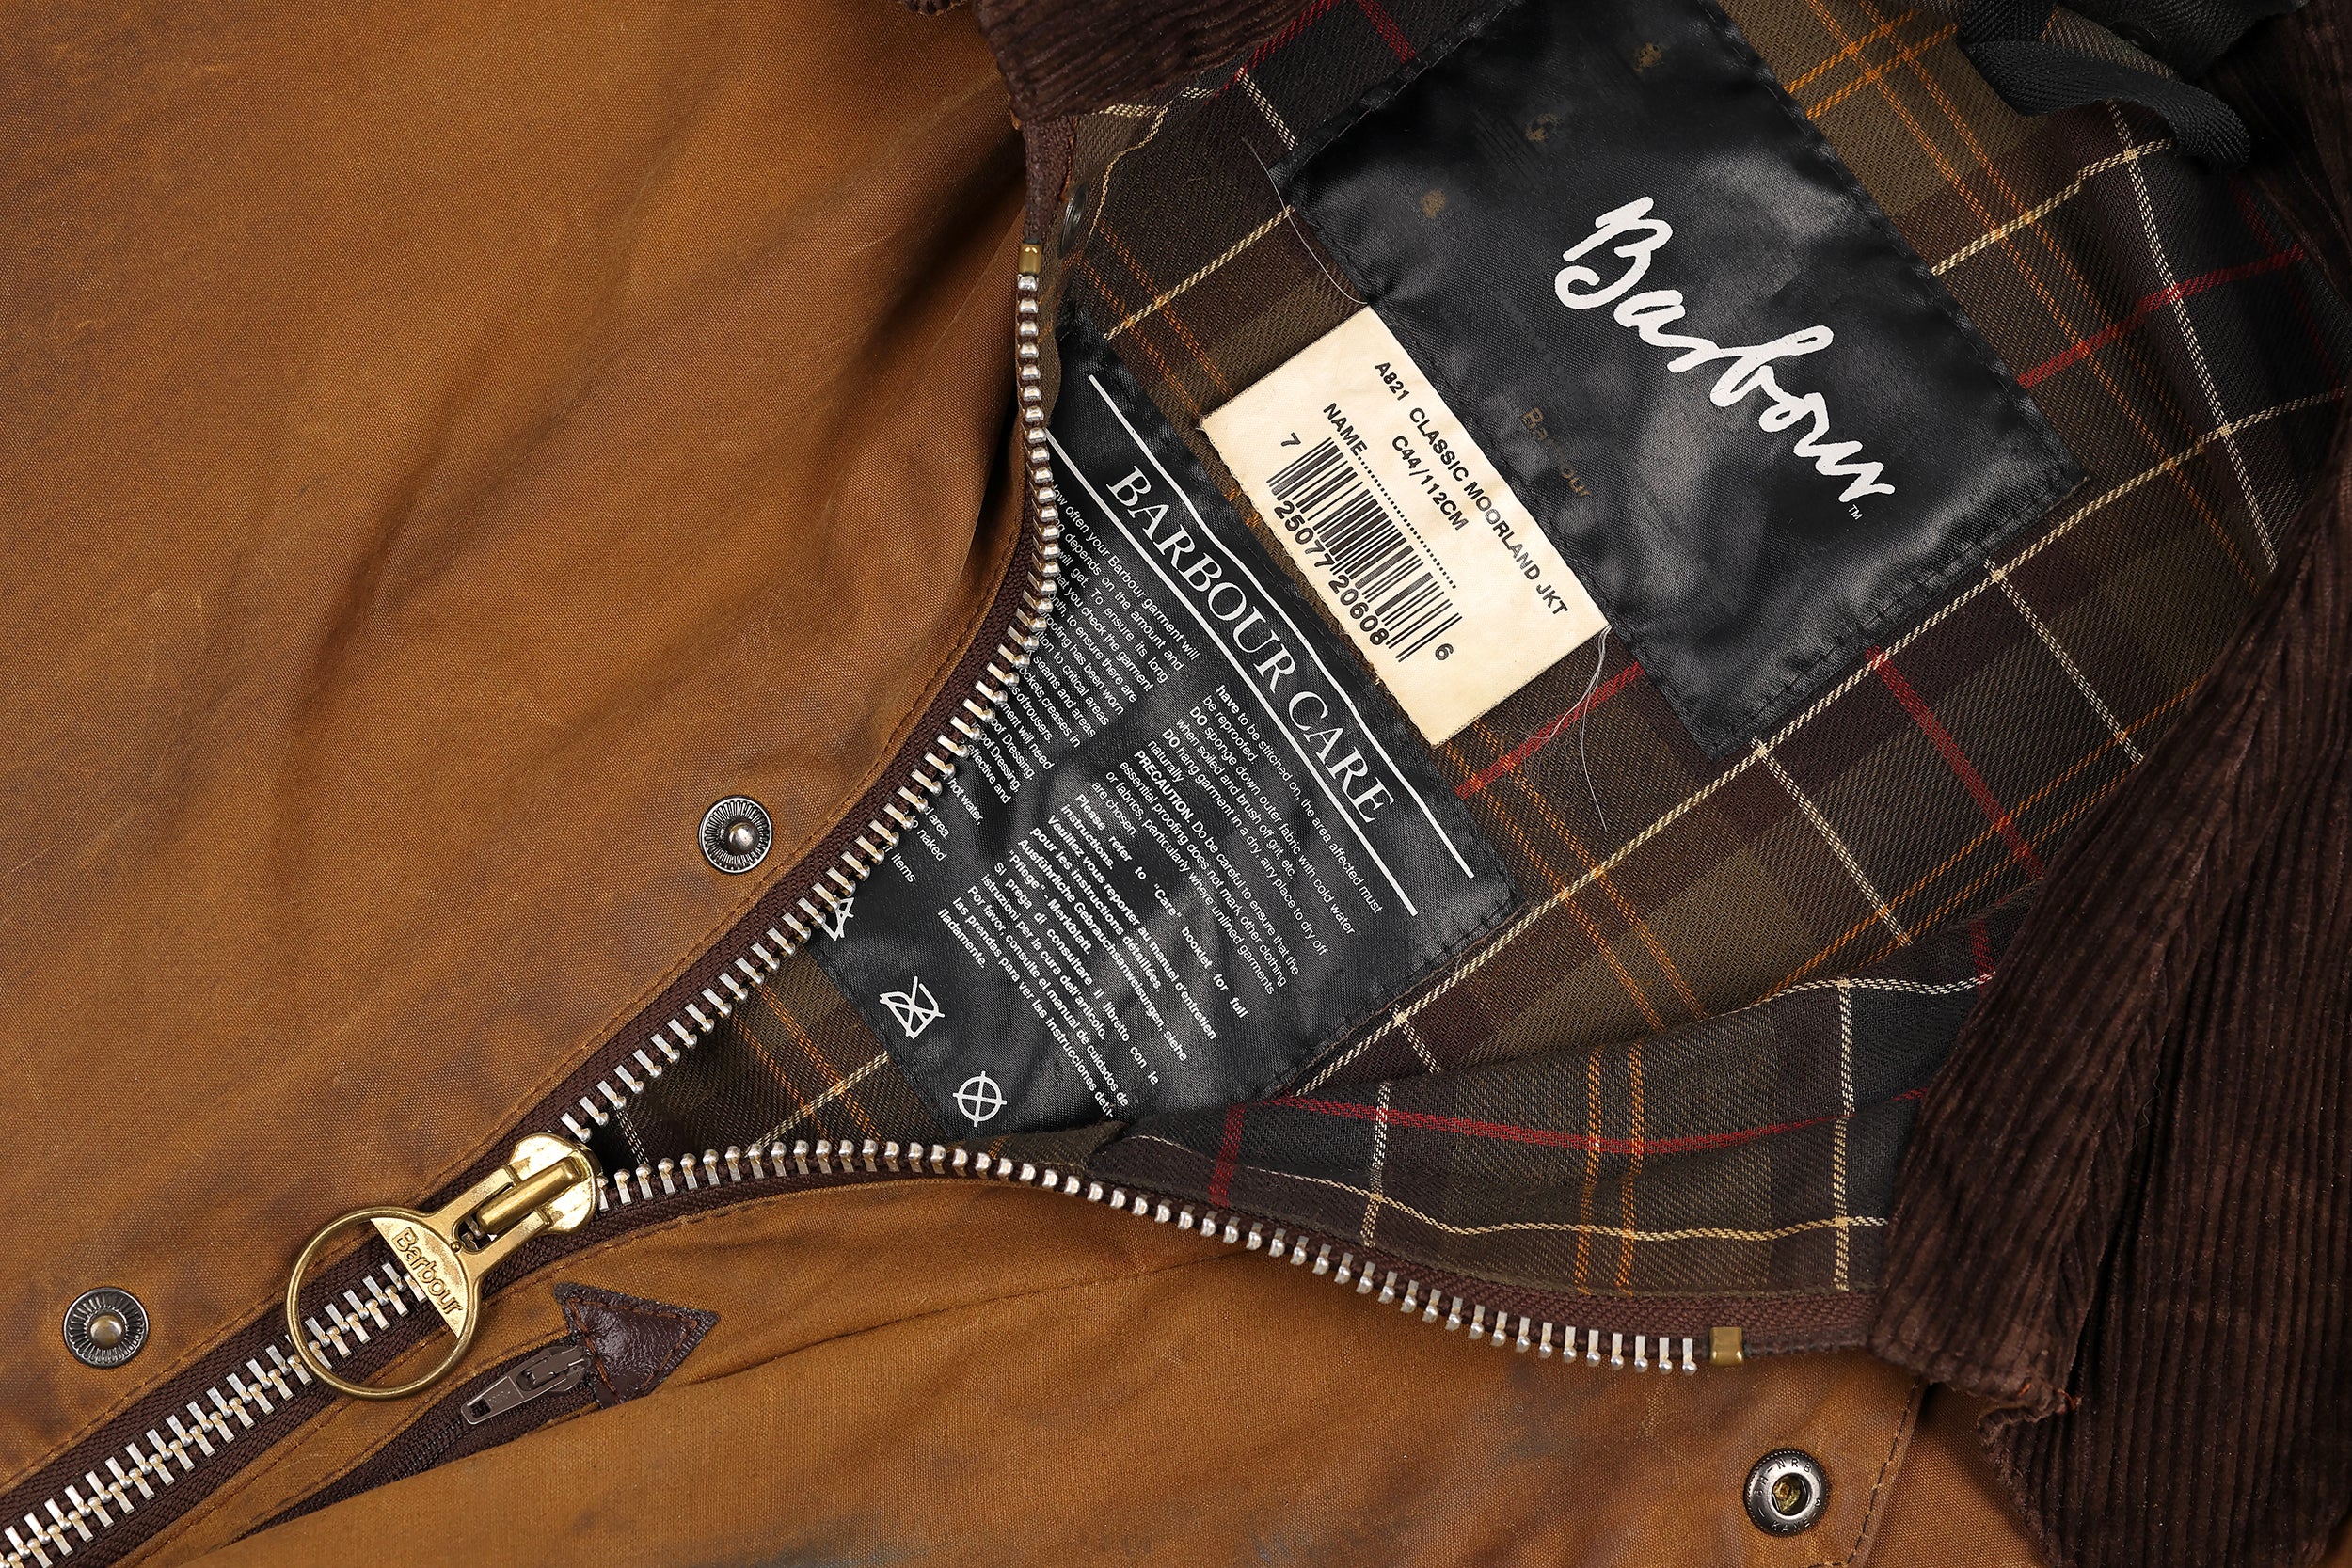 Barbour Classic Moorland Wax Jacket Coat - Brown - XL – Headlock